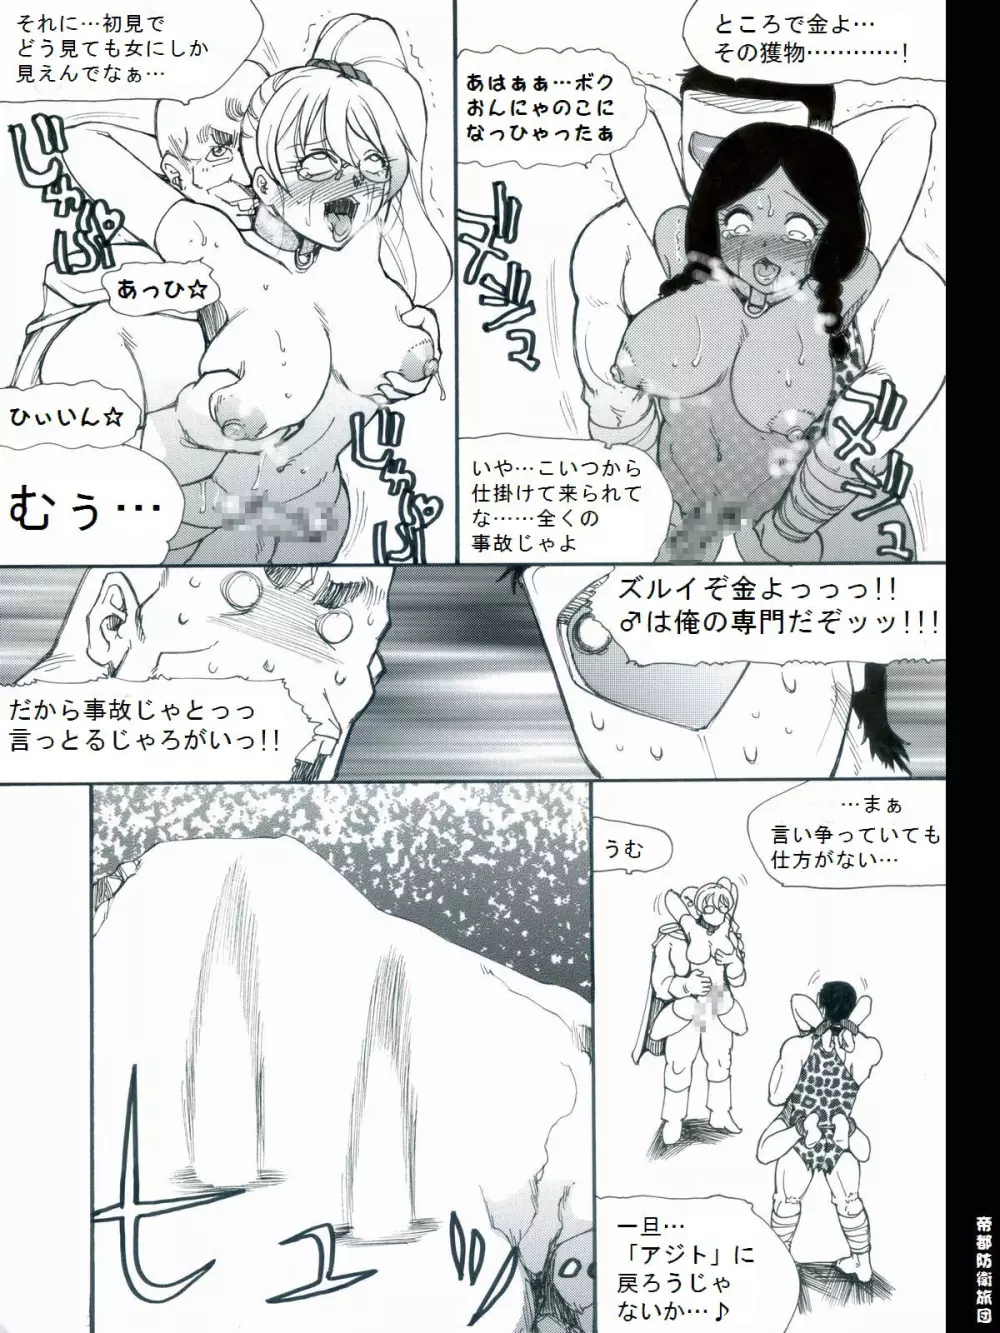 [帝都防衛旅団] RTKBOOK 9-3 「M○Xいぢり(3) 『PANPAN-MAN』」 12ページ